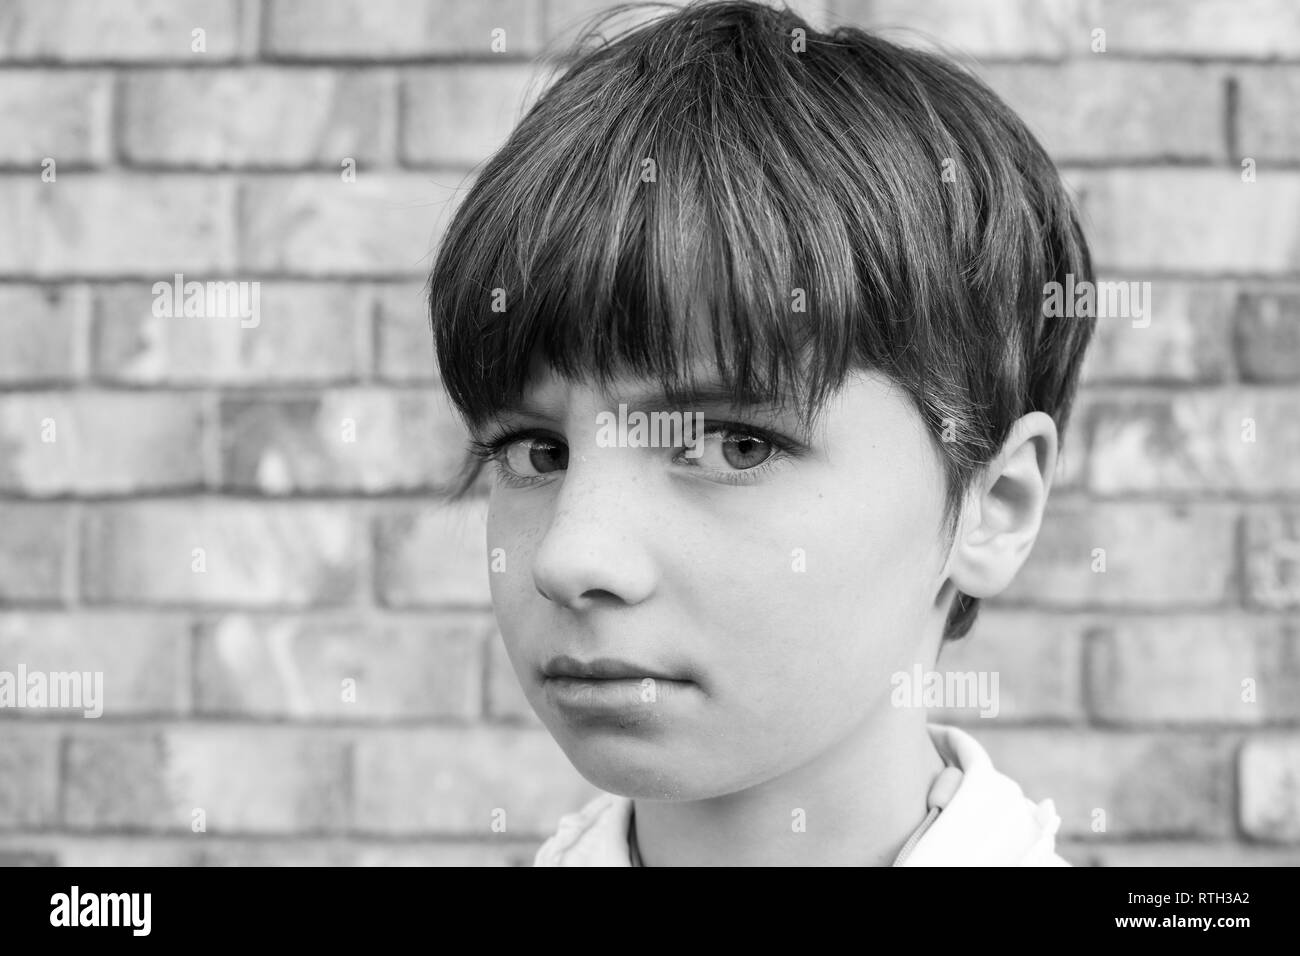 Ritratto in bianco e nero di un pelo corto bambino con grandi occhi e un sguardo arrabbiato Foto Stock